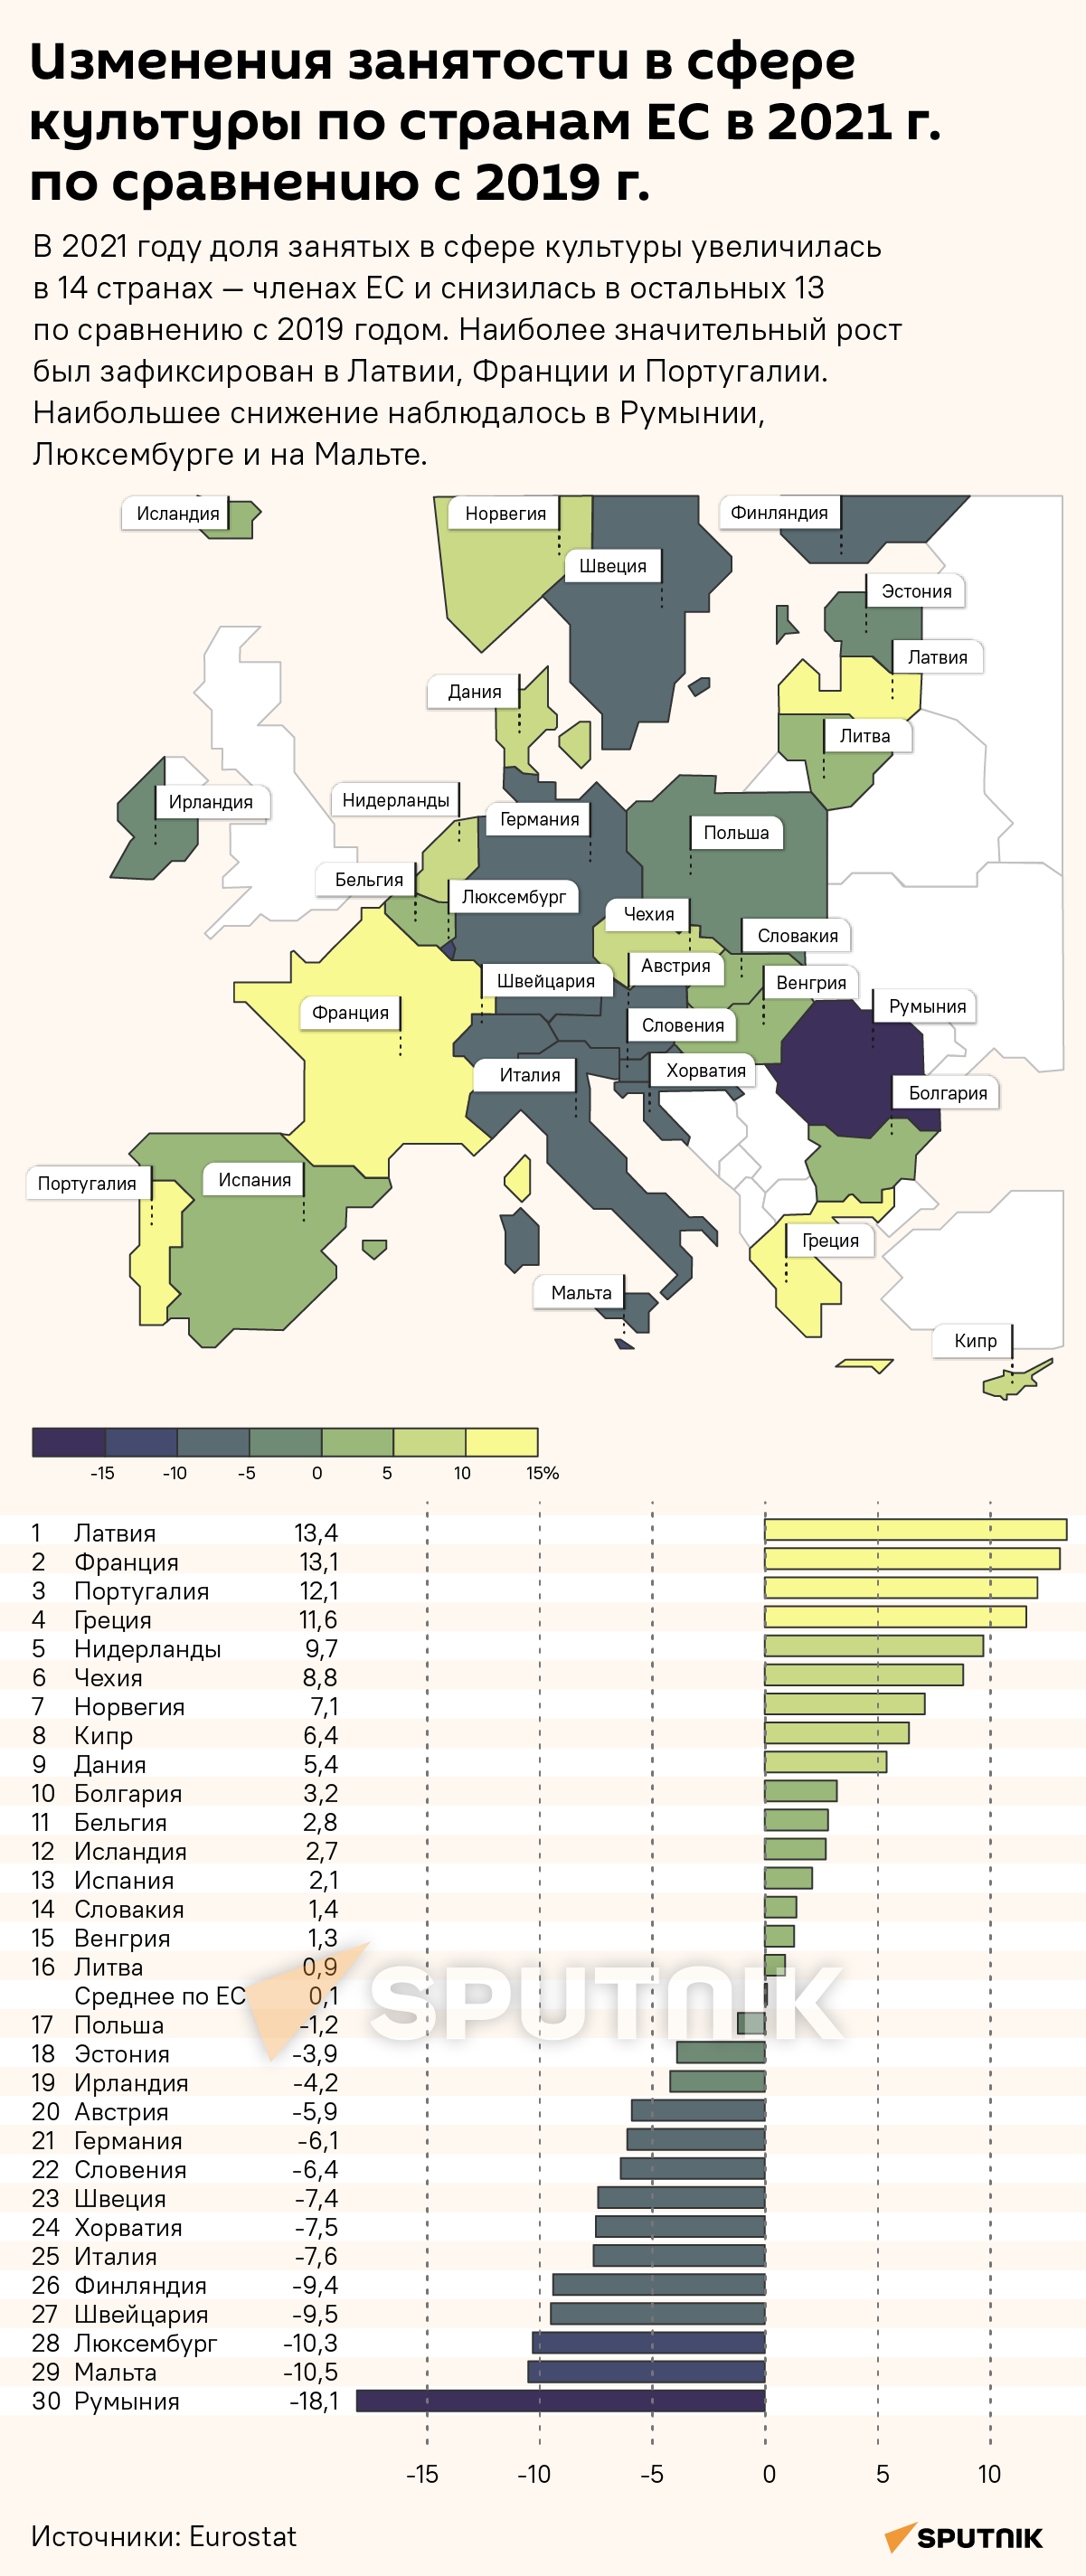 Изменения занятости в сфере культуры по странам ЕС в 2021 г. по сравнению с 2019 г. - Sputnik Латвия